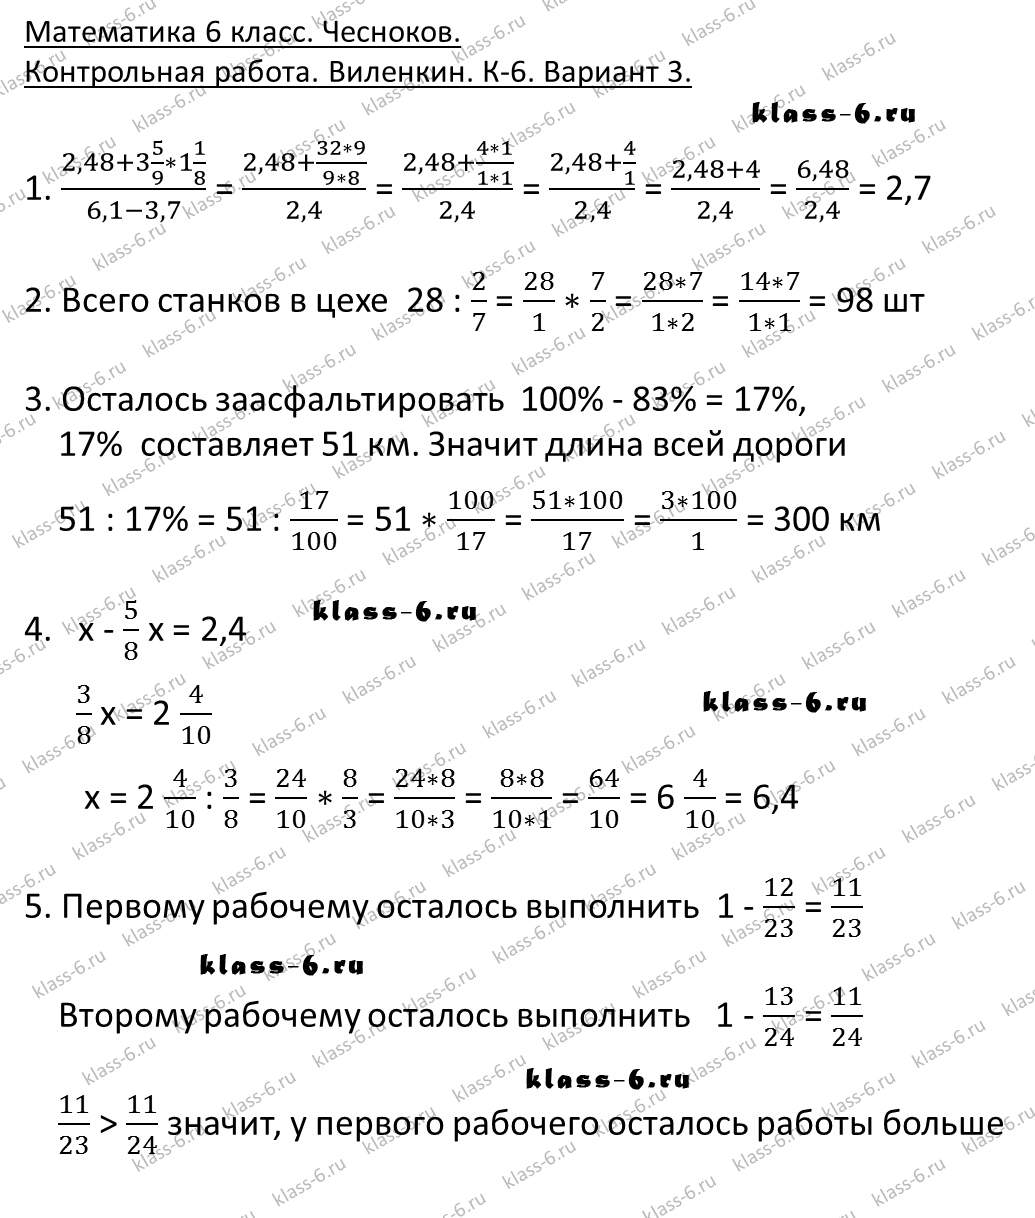 гдз математика Чесноков дидактические материалы 6 класс ответ и подробное решение с объяснениями контрольной работы Виленкин задание 6 вариант 3